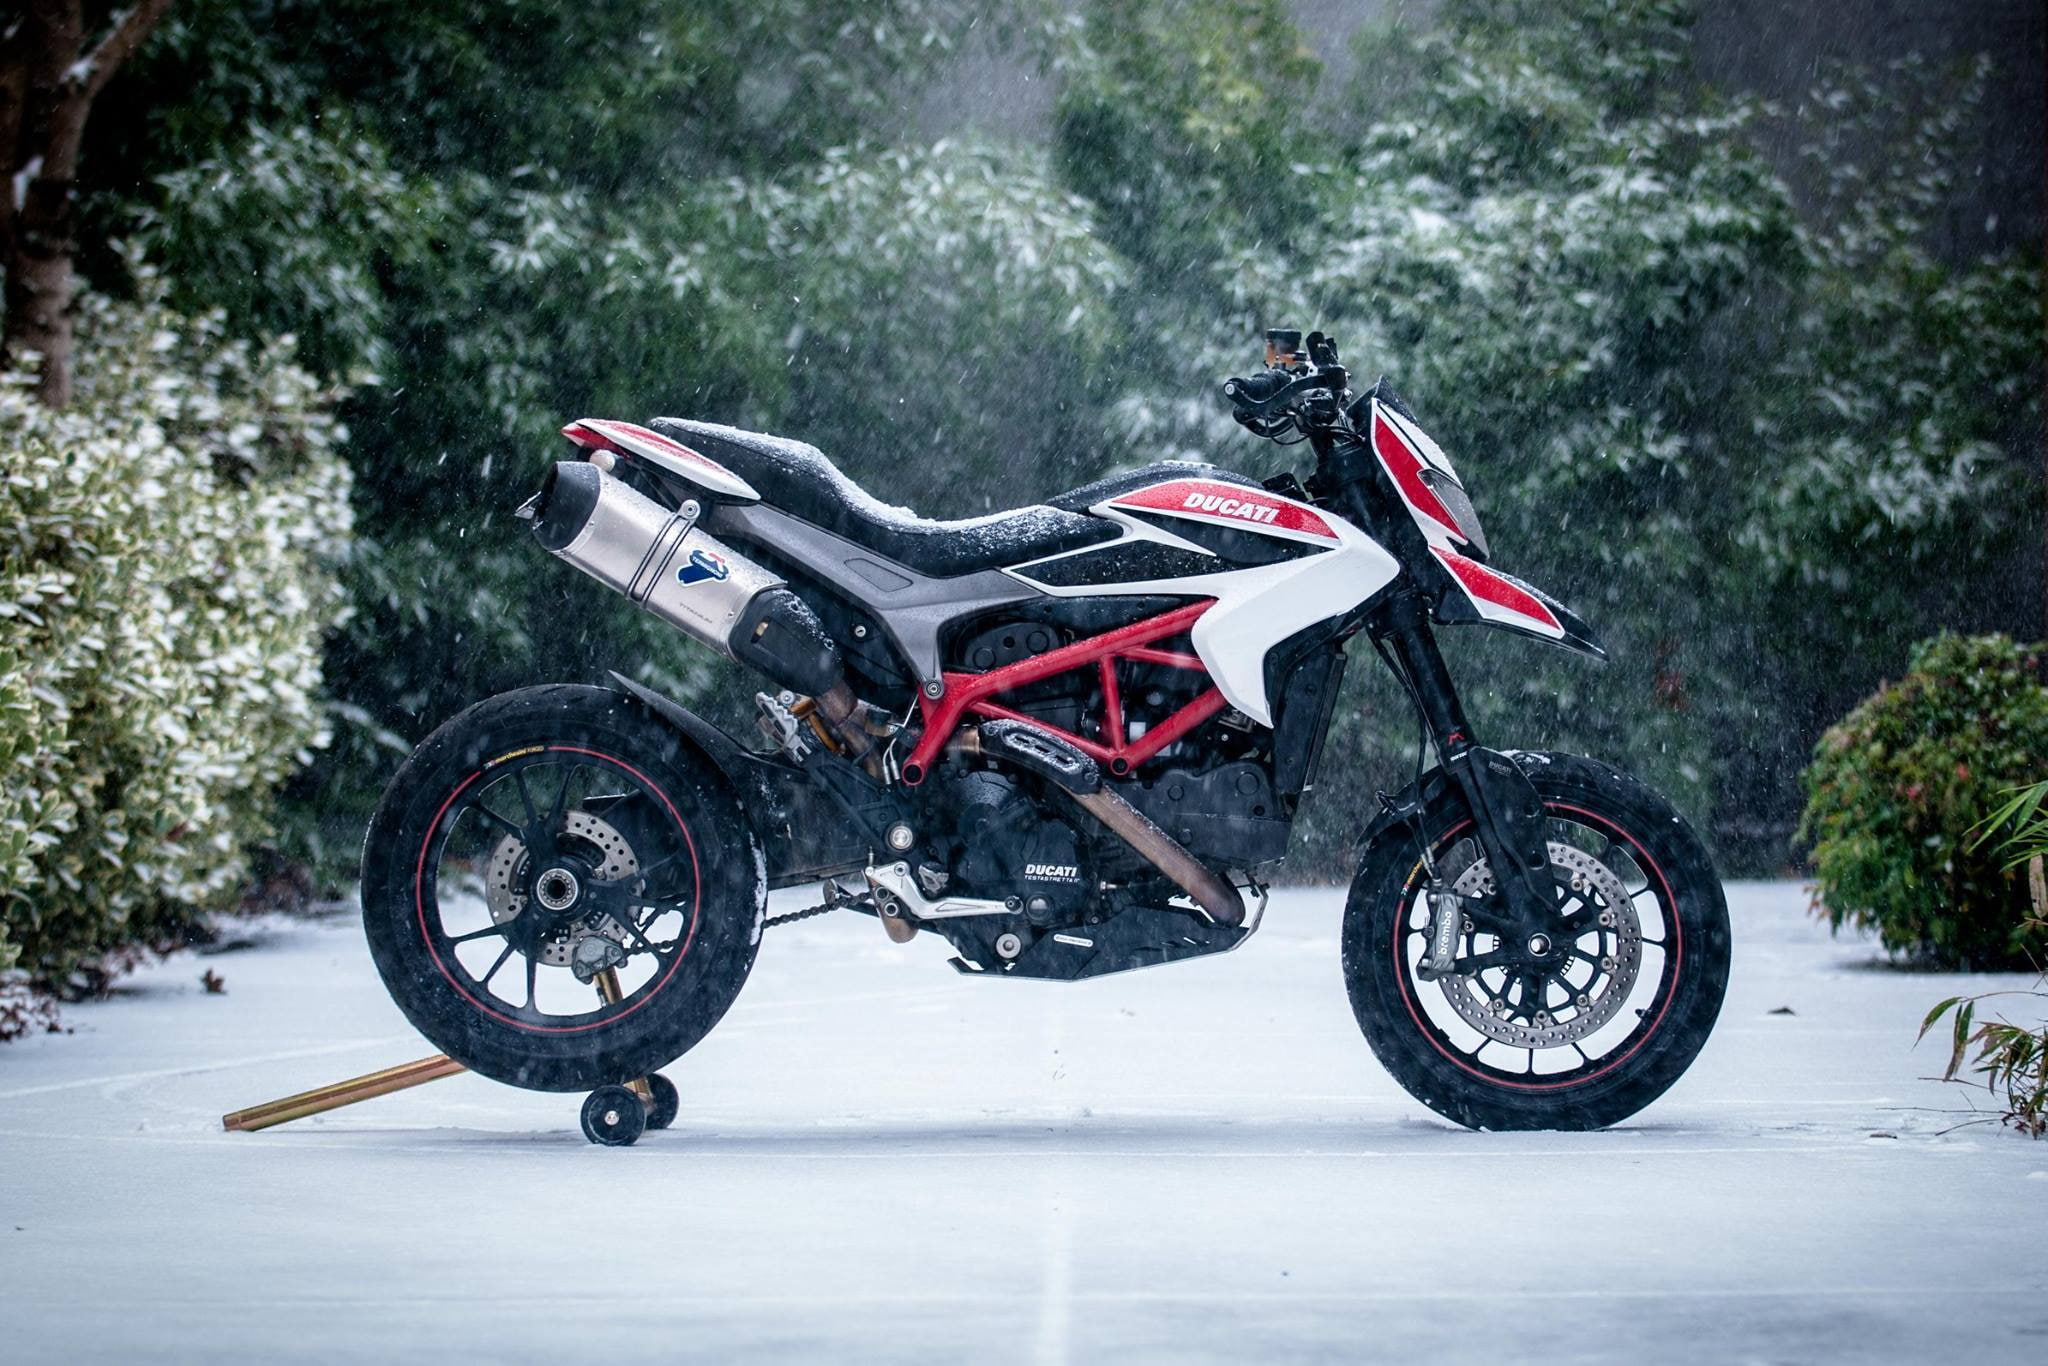 Ducati Hypermotard, Snowfall, transportation, mode of transportation